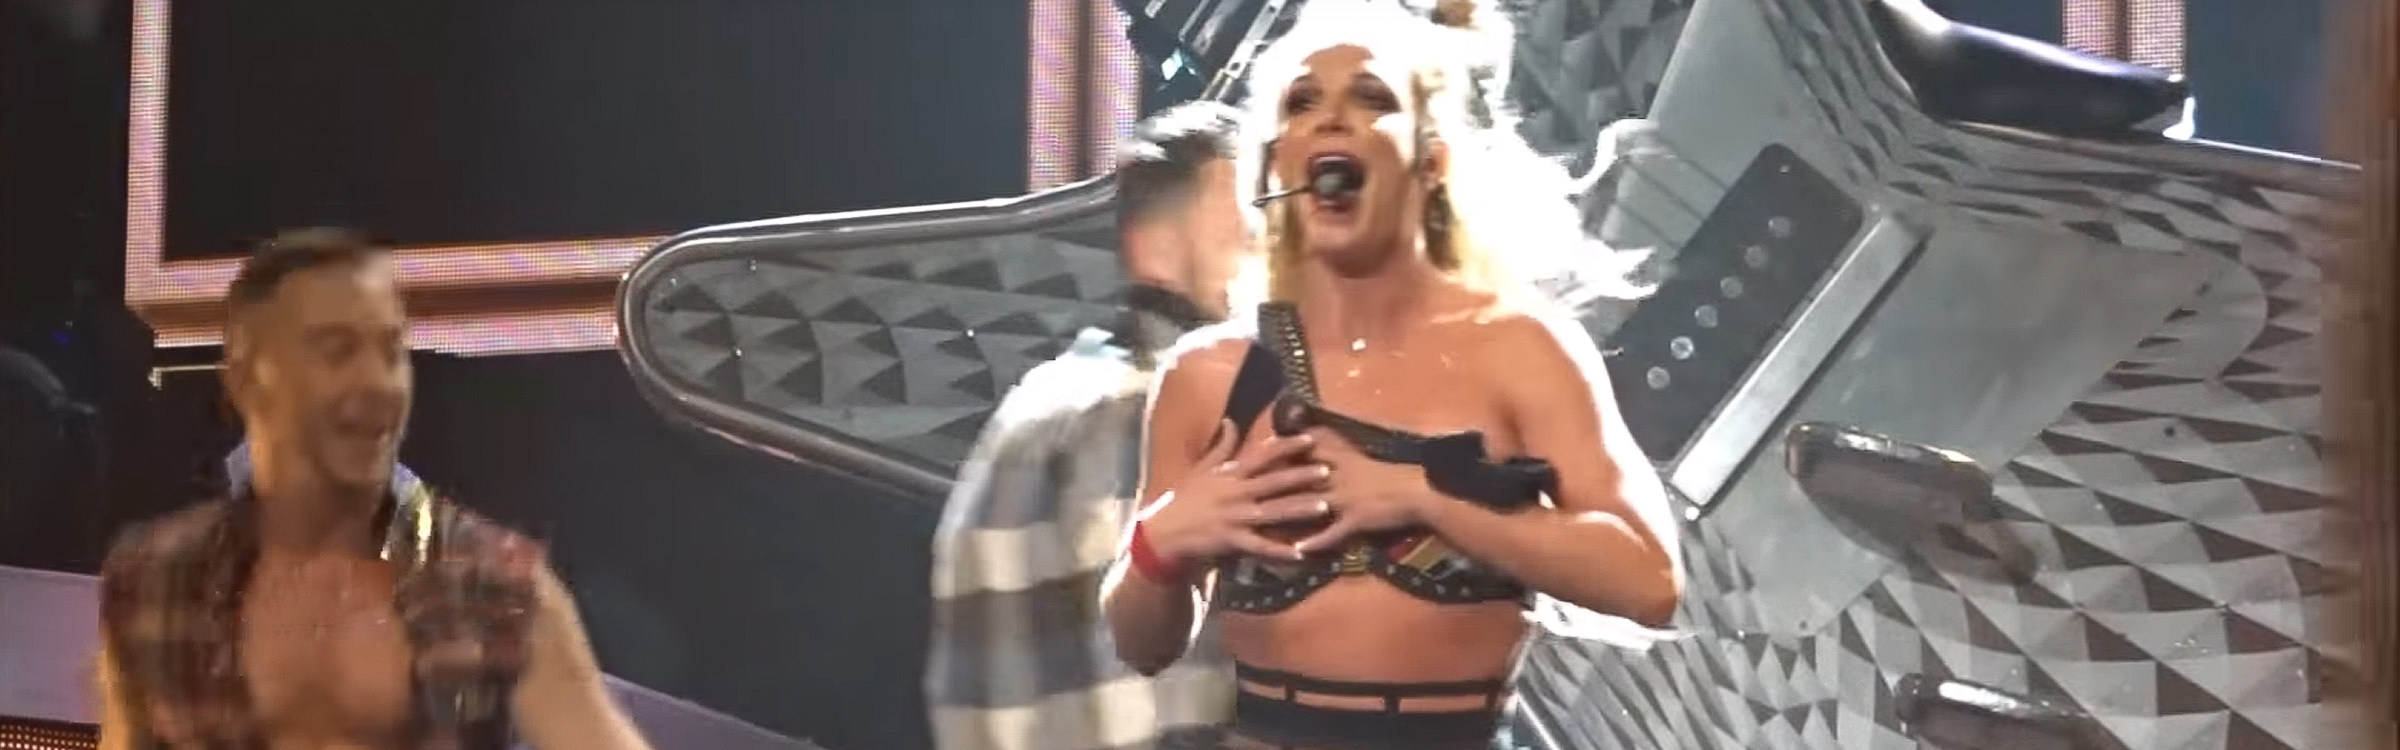 Britney oops headerecht